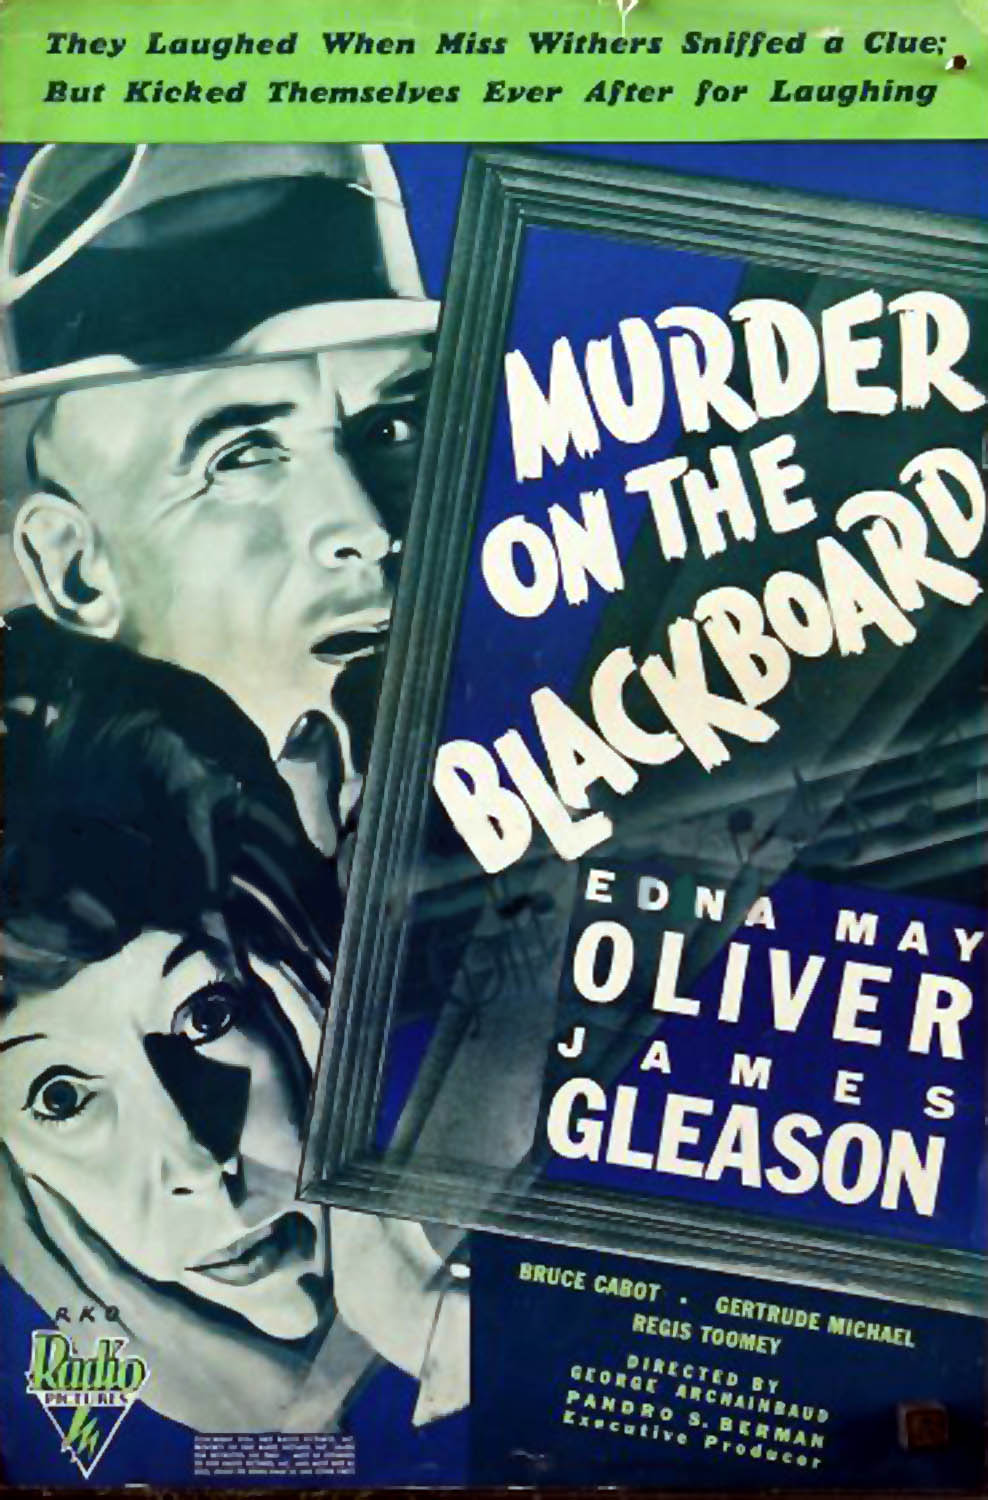 MURDER ON THE BLACKBOARD